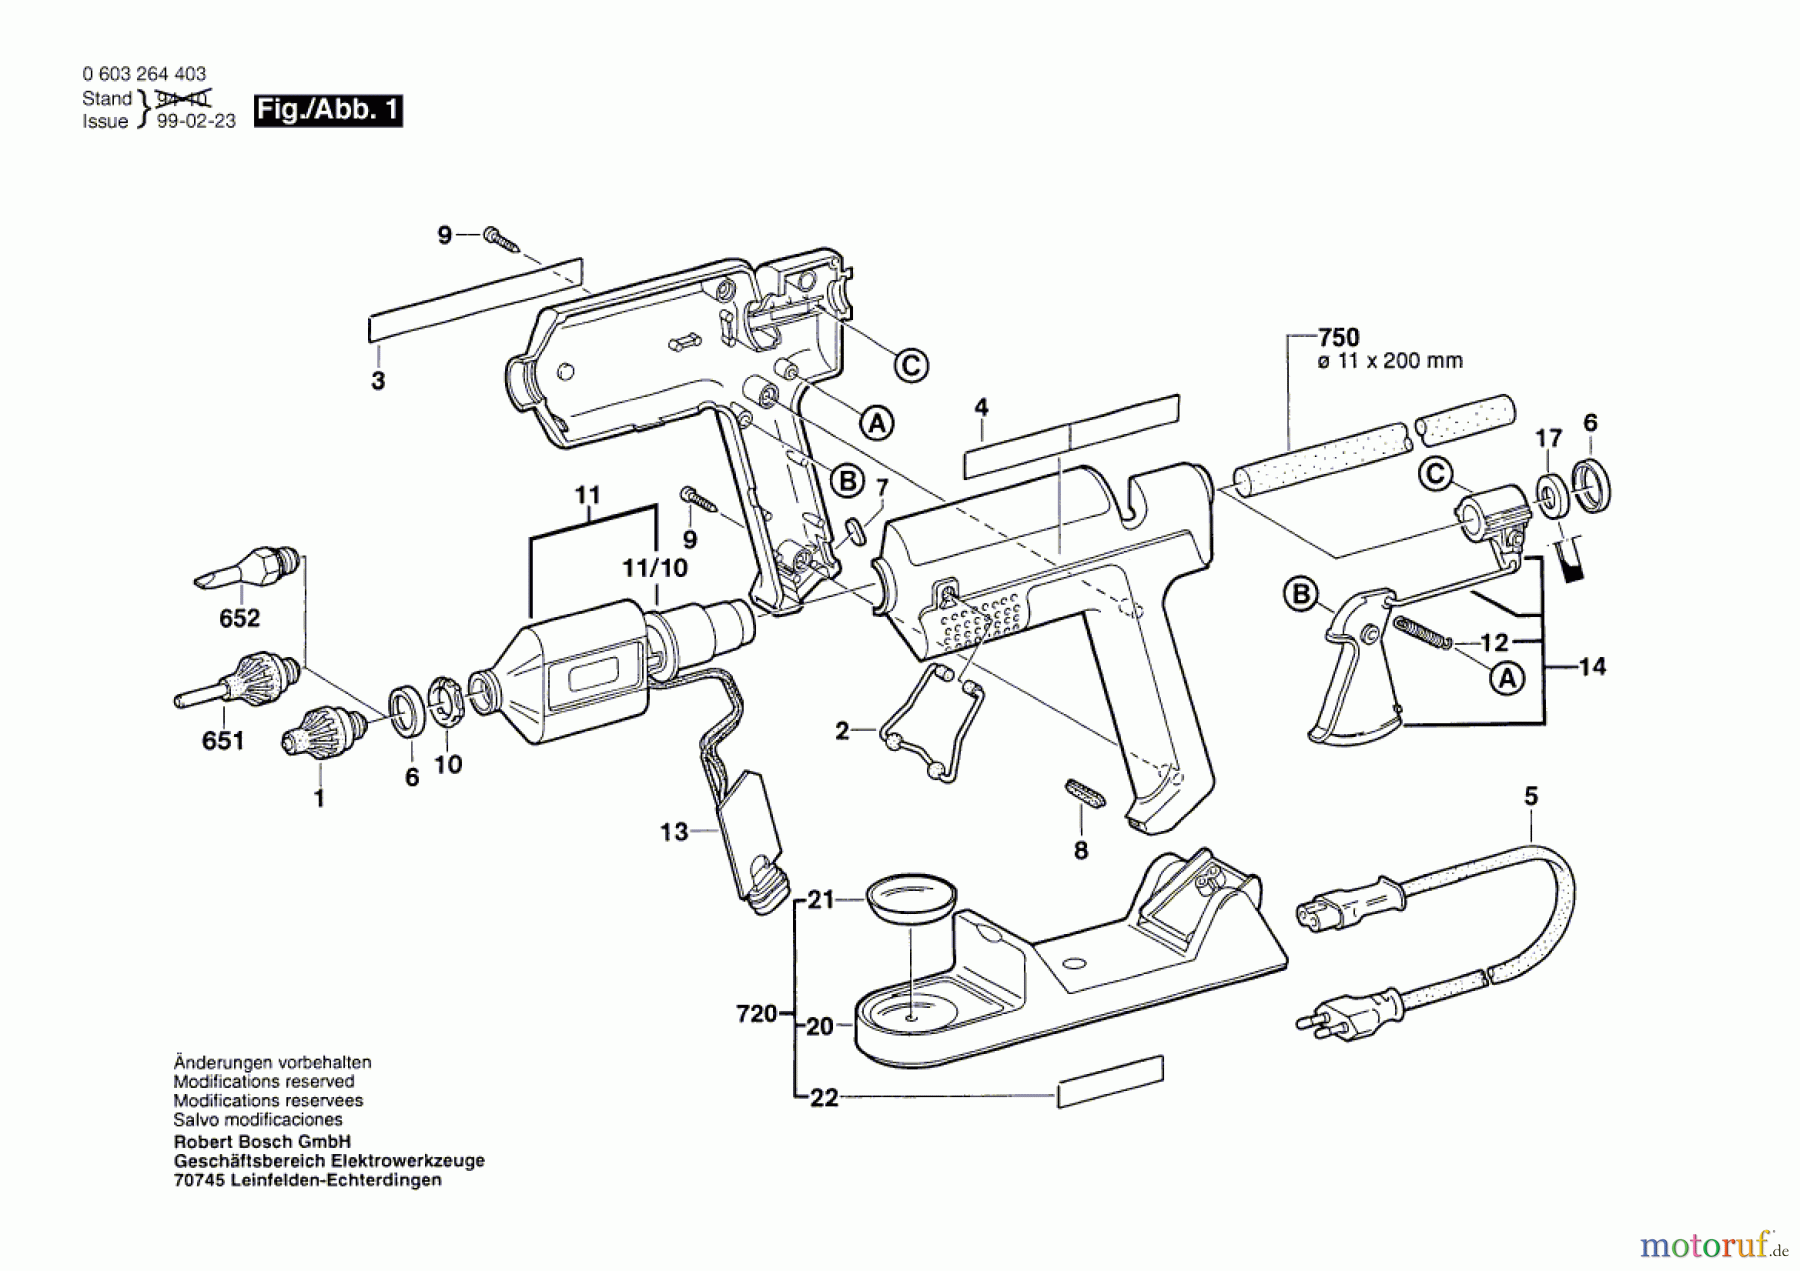  Bosch Werkzeug Klebepistole PKP 30 LE Seite 1